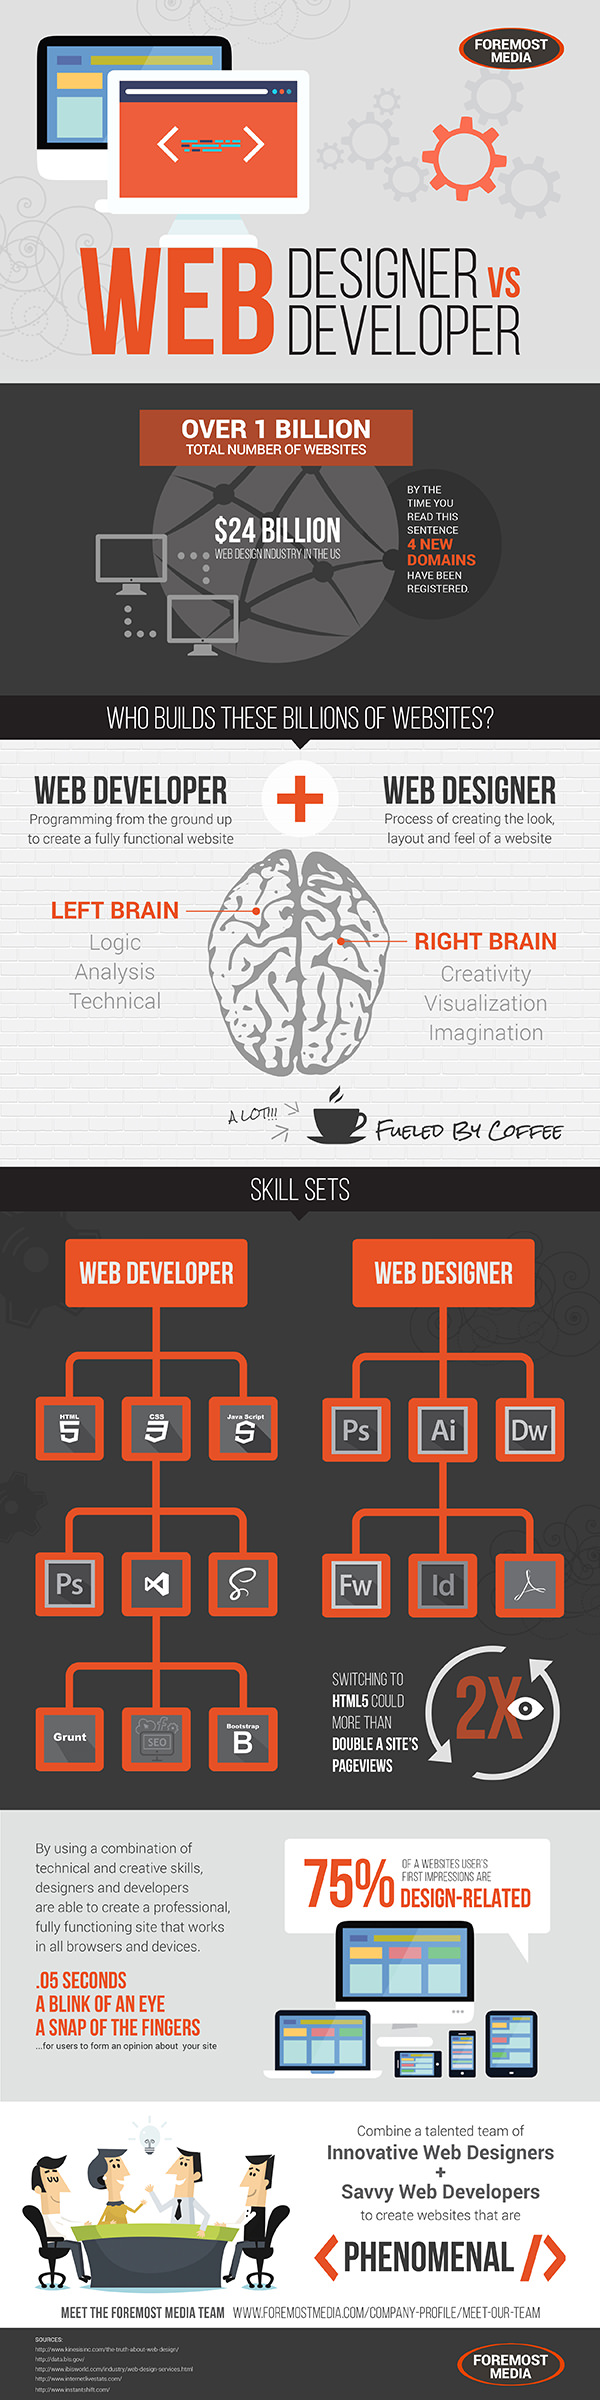 web-designer-vs-developer-infographic